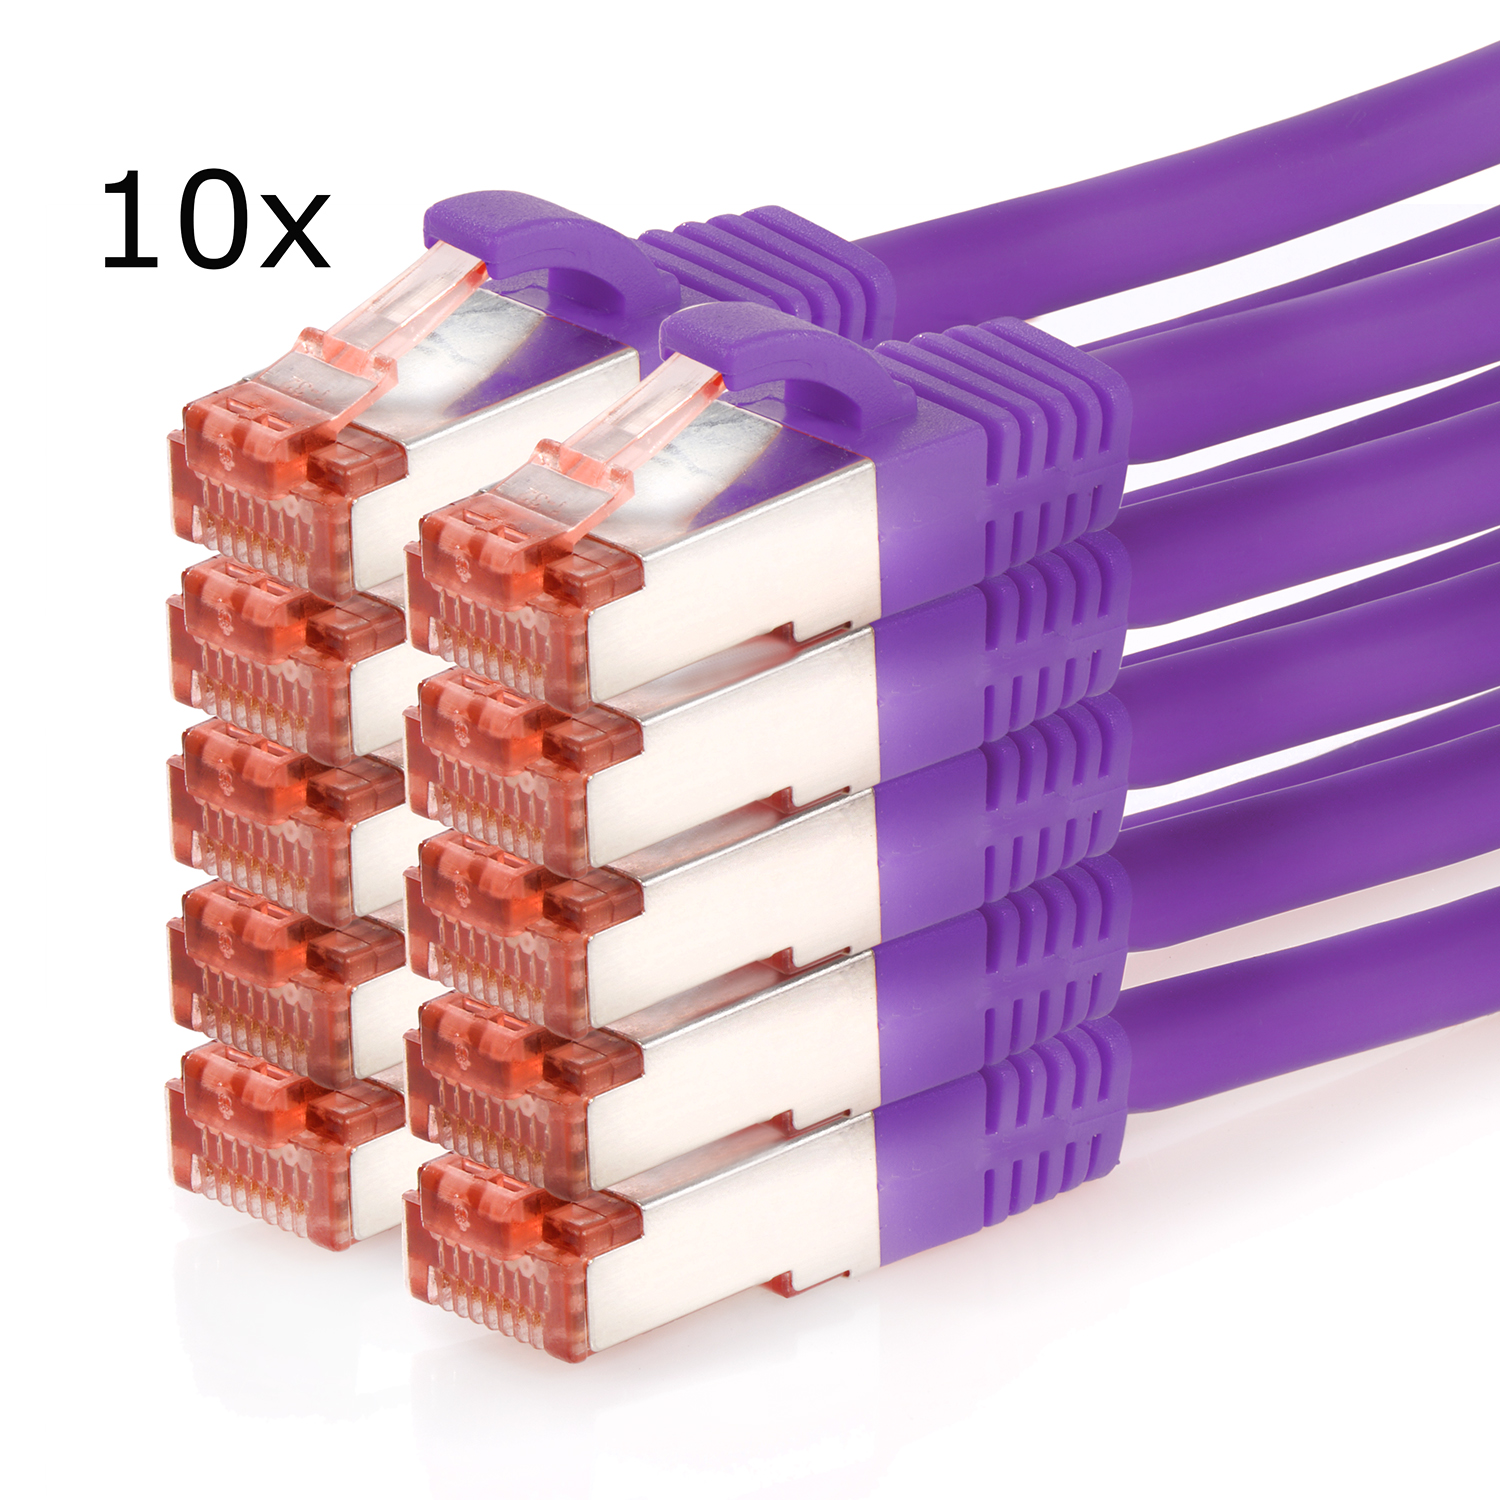 TPFNET Pack Netzwerkkabel 10er / Netzwerkkabel, violett, 7,5 S/FTP Patchkabel 1000Mbit, m 7,5m